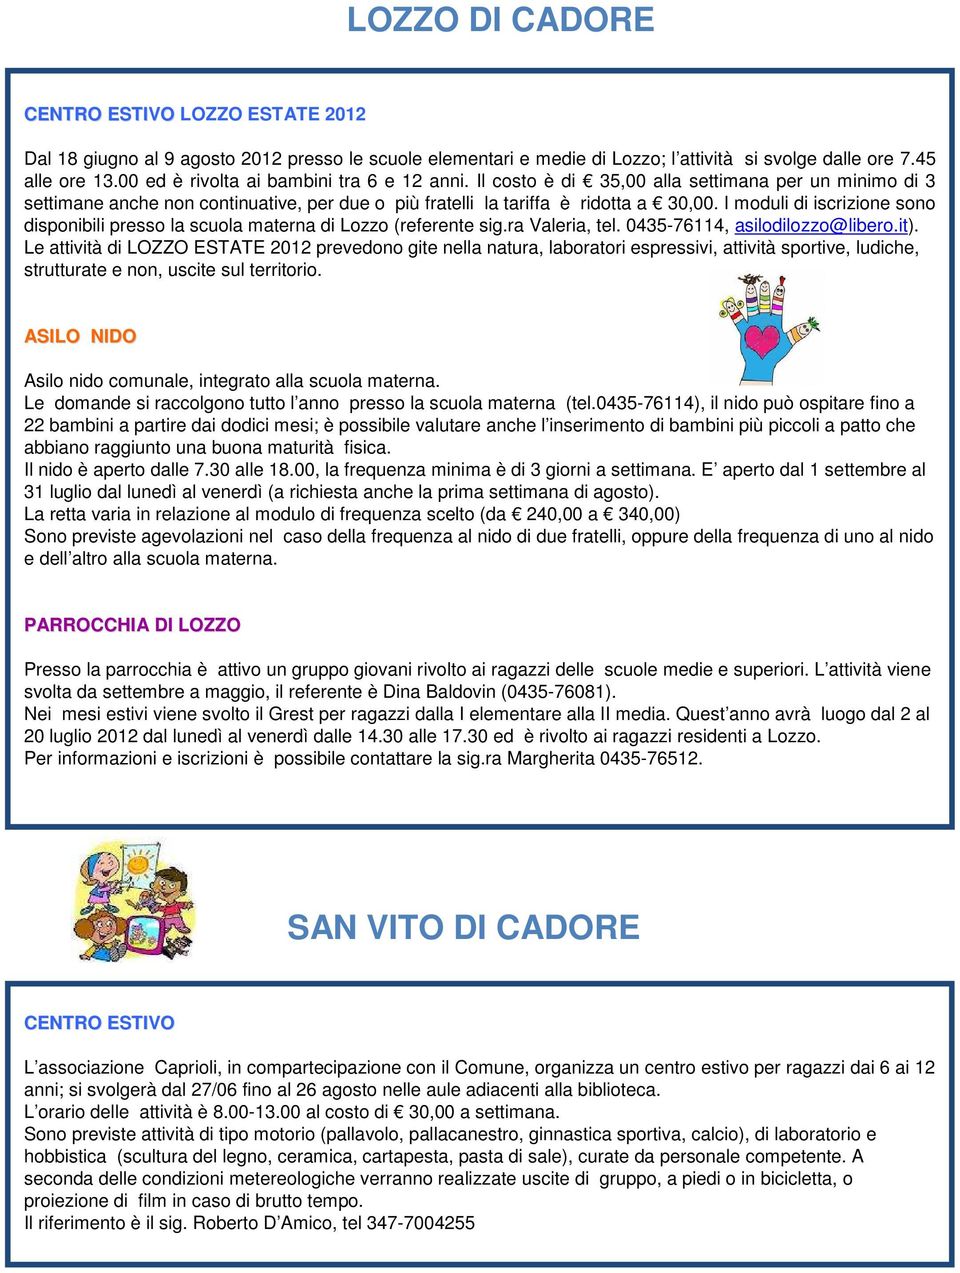 I moduli di iscrizione sono disponibili presso la scuola materna di Lozzo (referente sig.ra Valeria, tel. 0435-76114, asilodilozzo@libero.it).